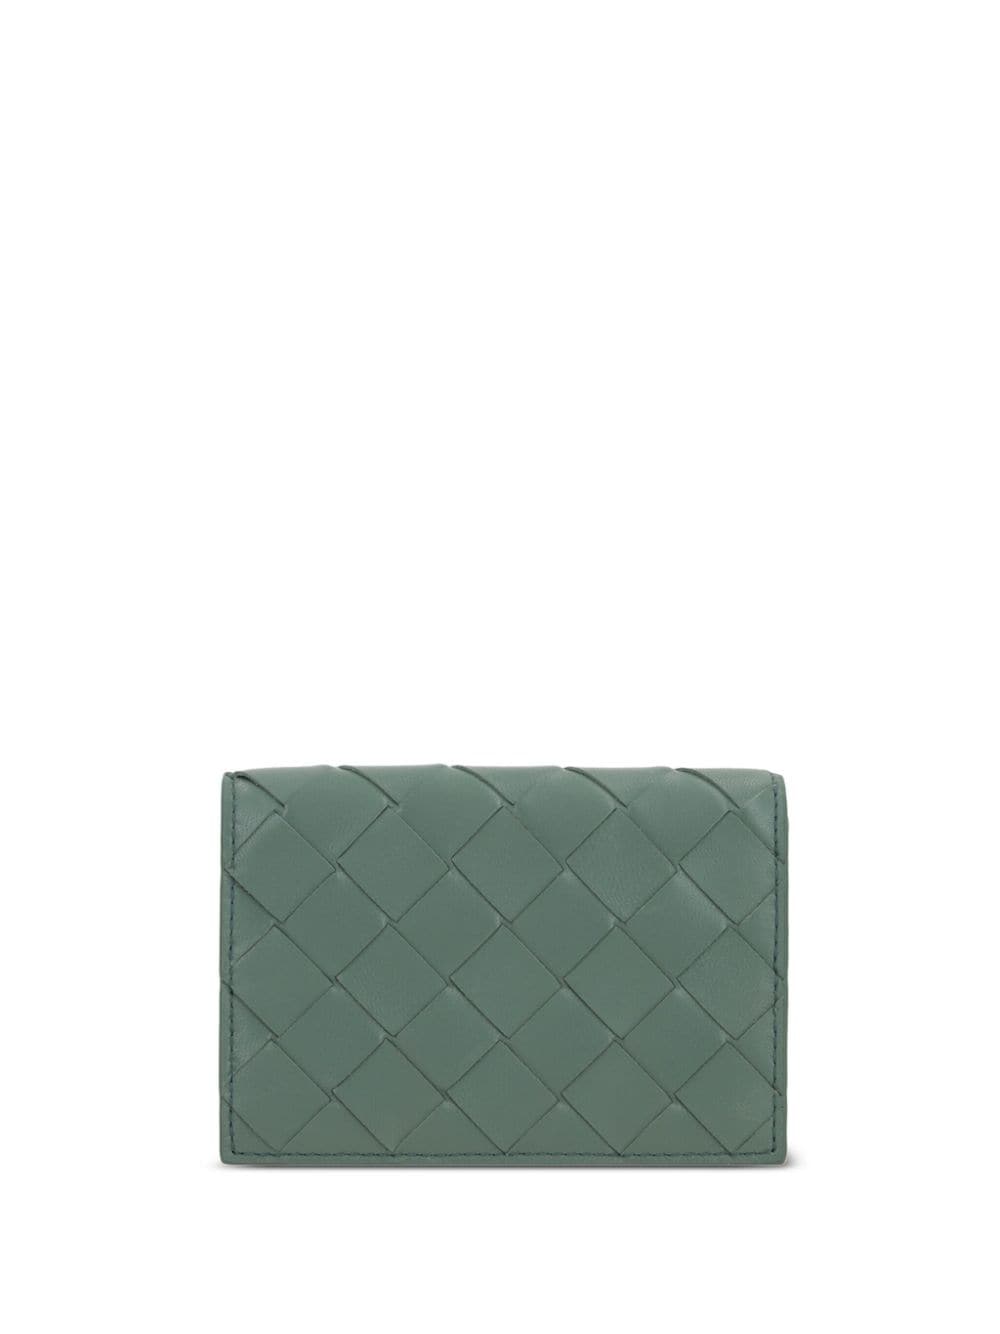 Bottega Veneta Intrecciato Leather Cardholder In Green